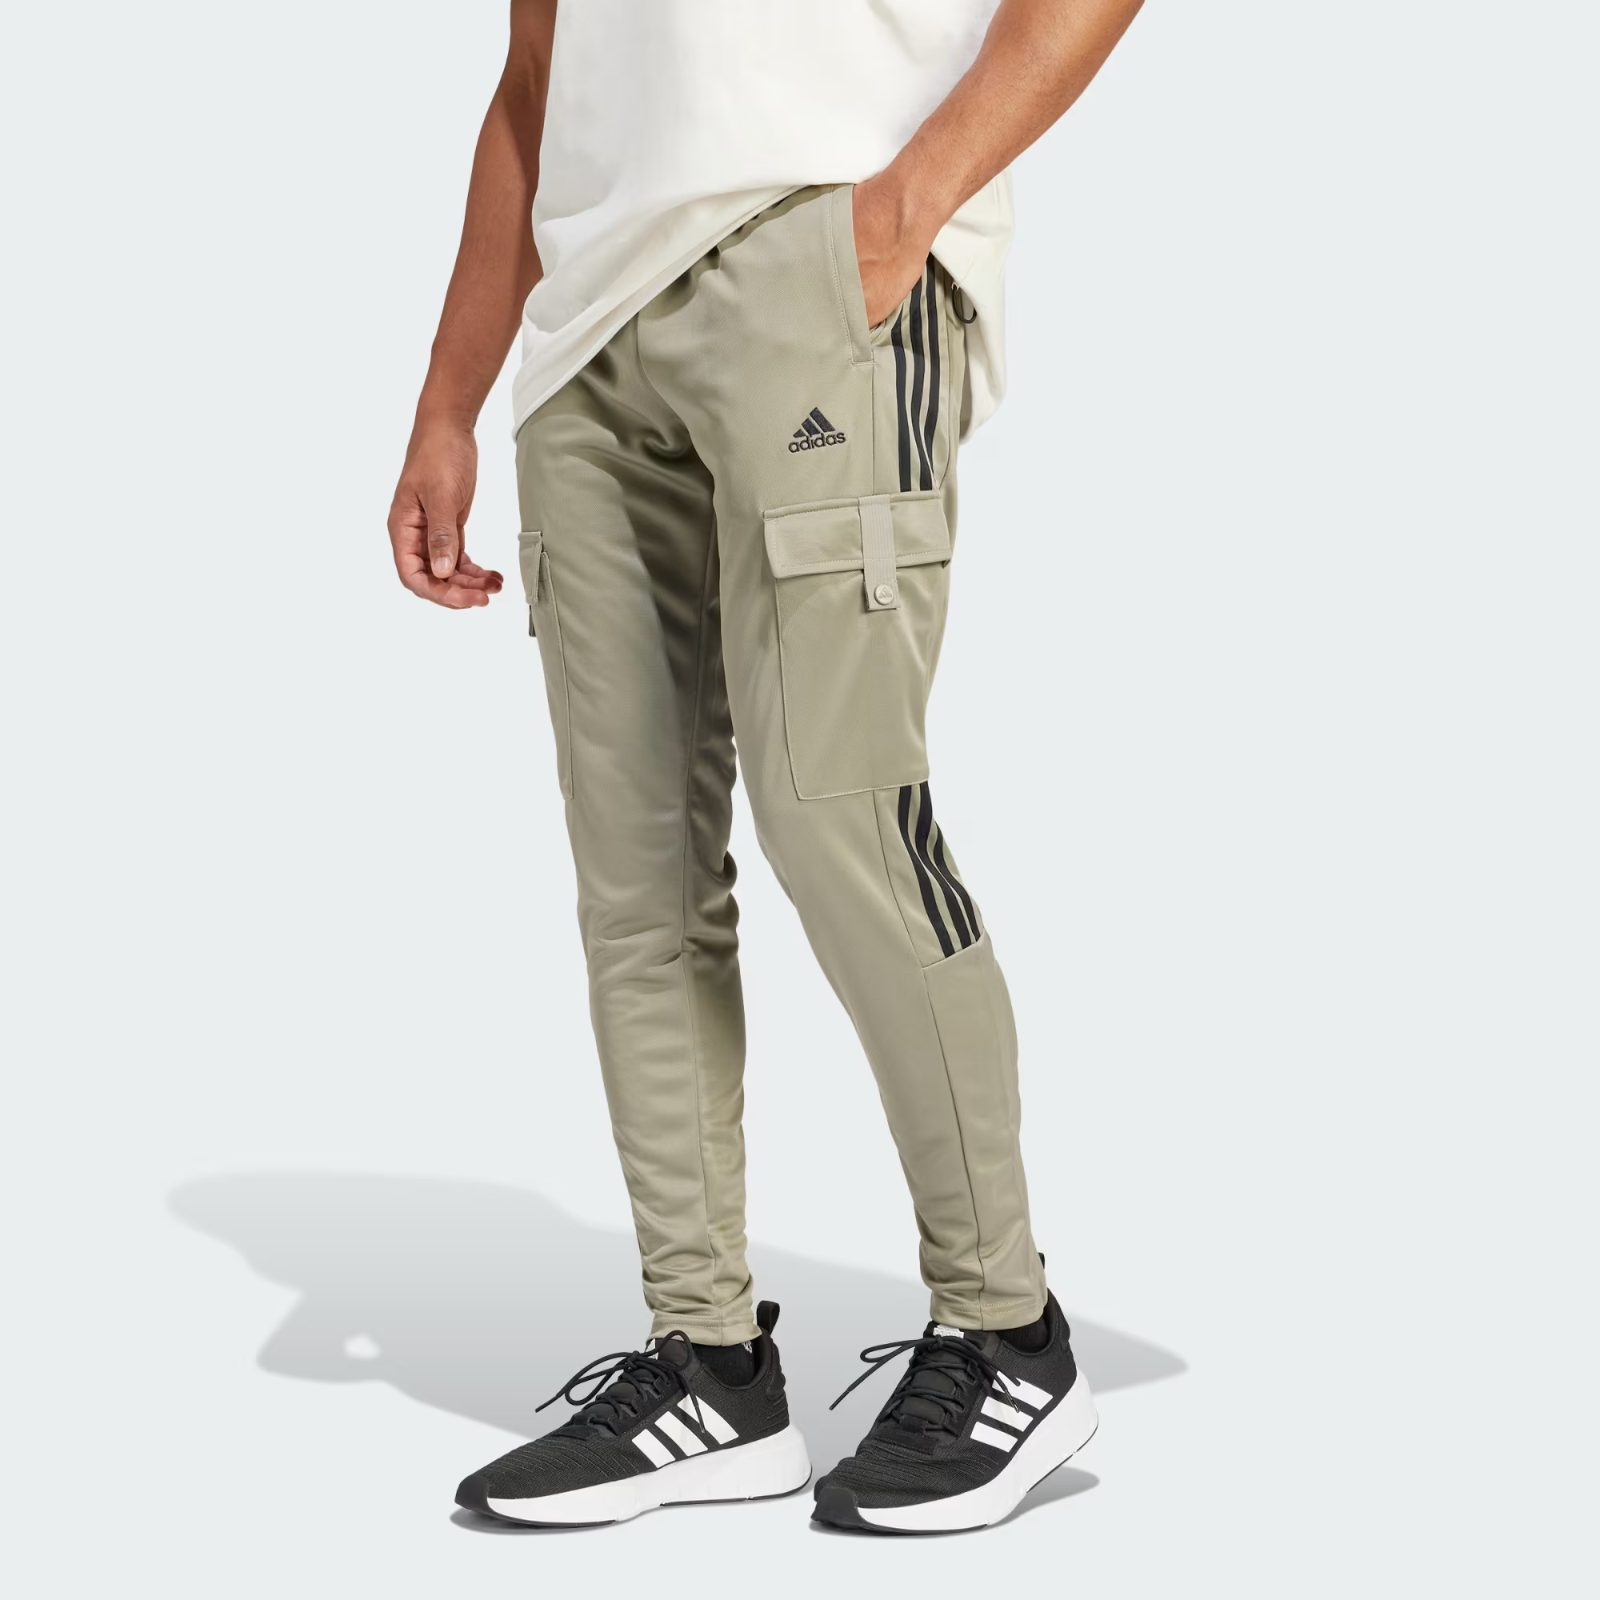 50 Pantaloni Adidas Comfort and Uomo Cargo items Tiro similar